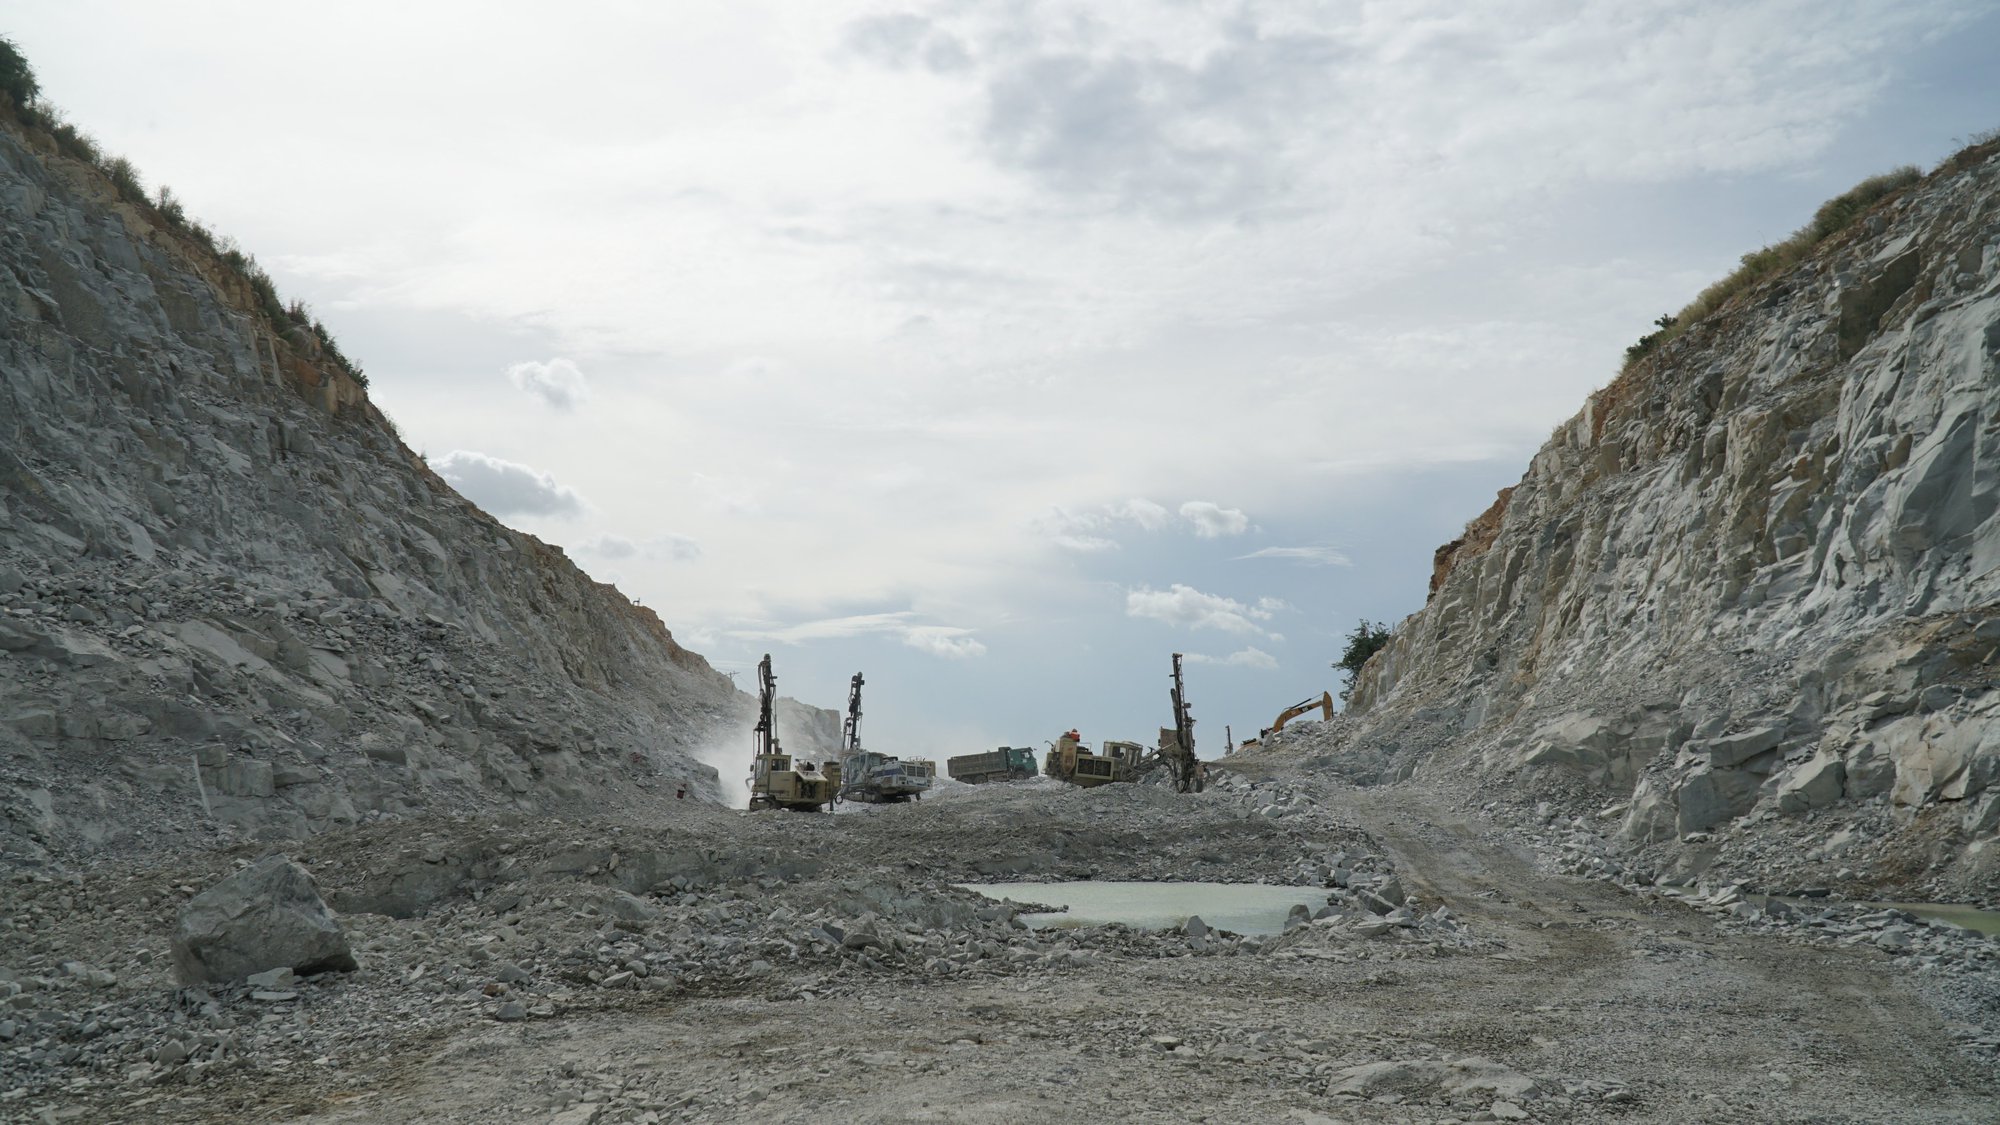 Thanh tra Chính phủ thanh tra cấp phép khai thác khoáng sản, dự án cao tốc Bắc - Nam gặp khó - Ảnh 1.